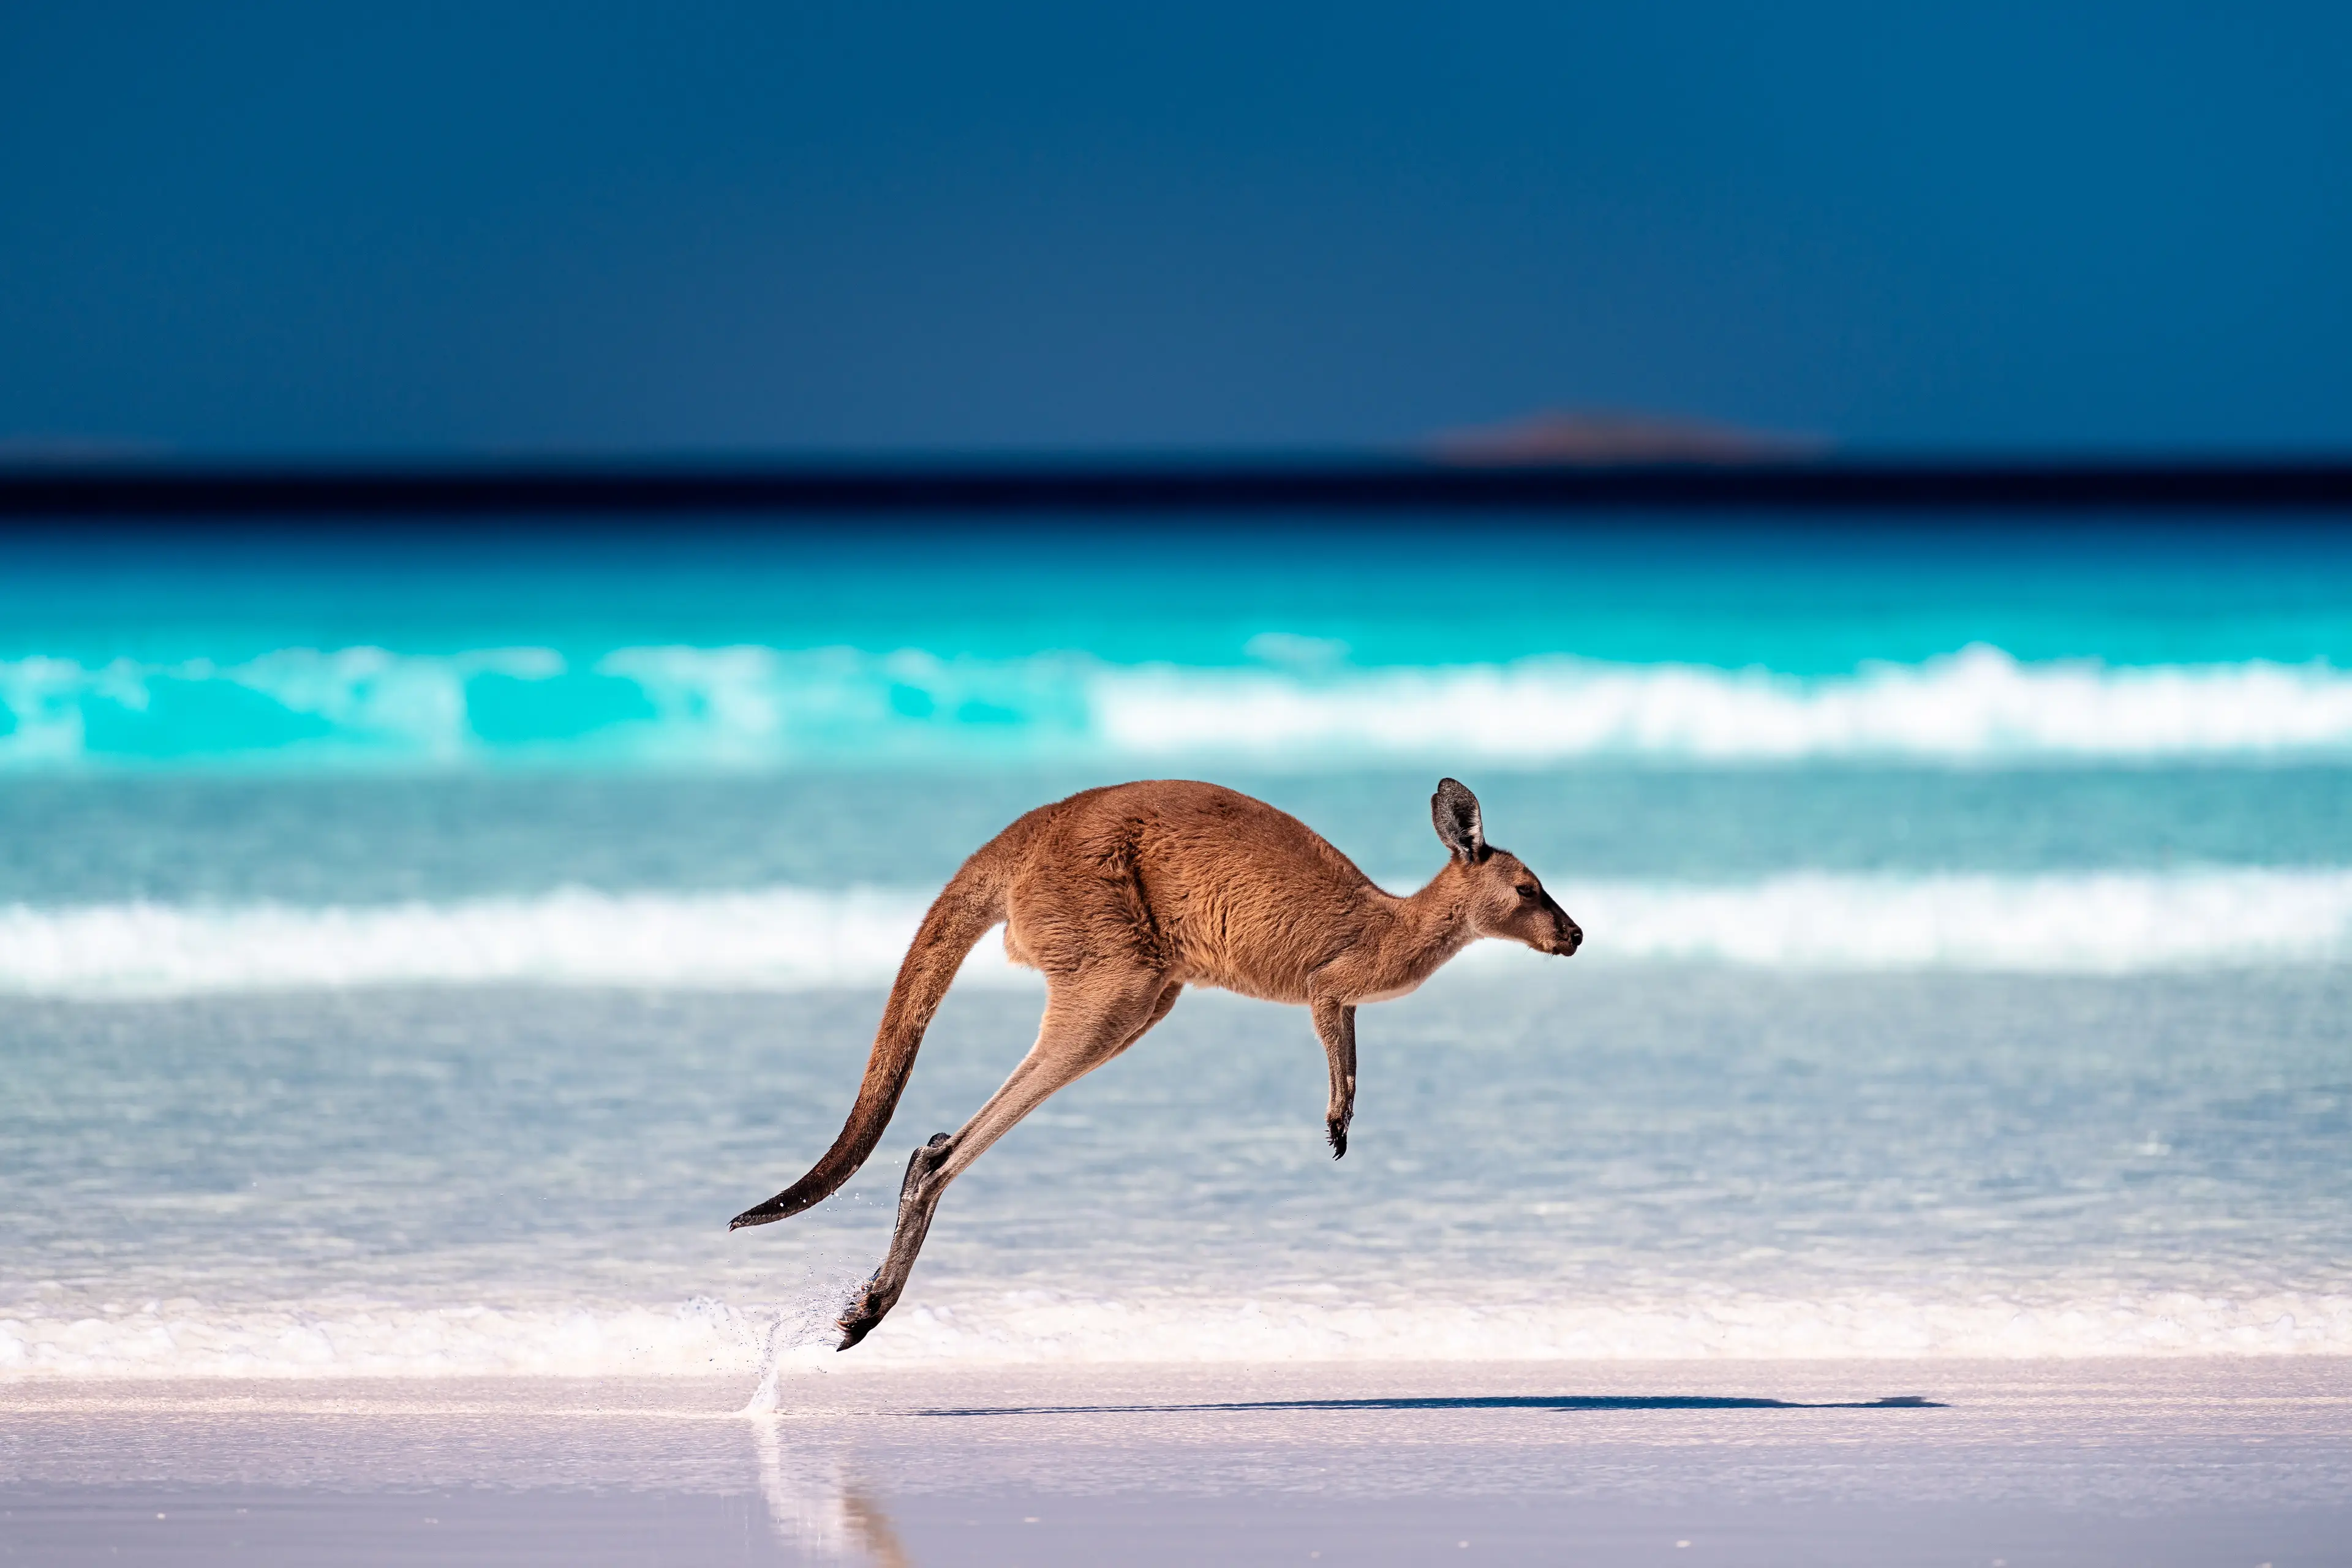 4-Day Adventure Through Stunning Western Australia